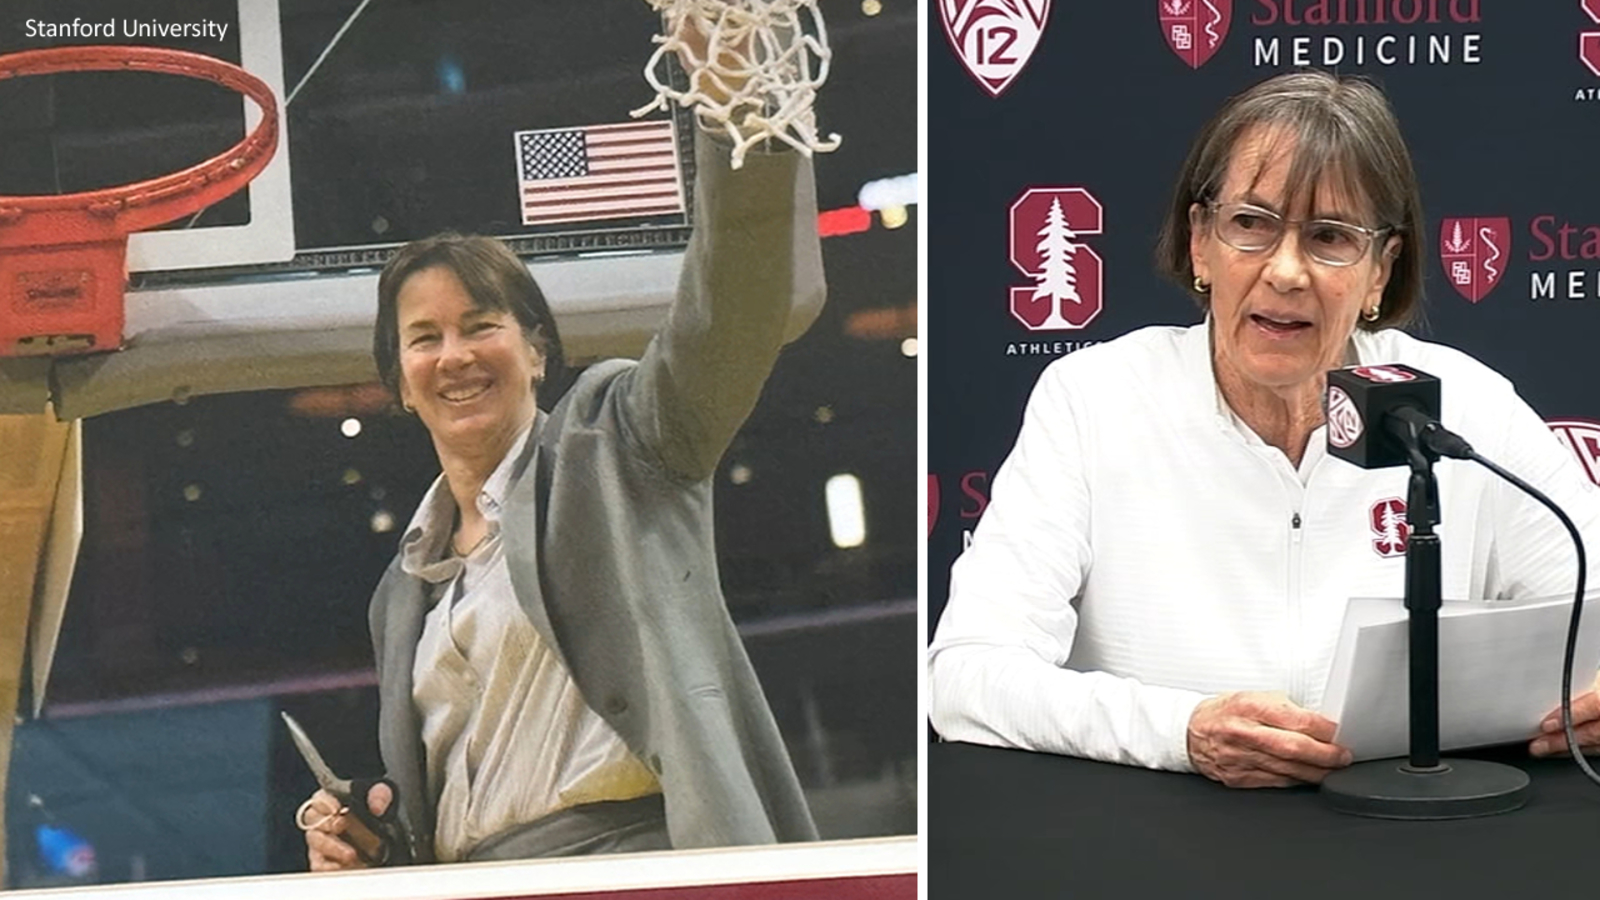 Stanford’s Tara VanDerveer looks back on winningest head coaching career in NCAA college basketball [Video]